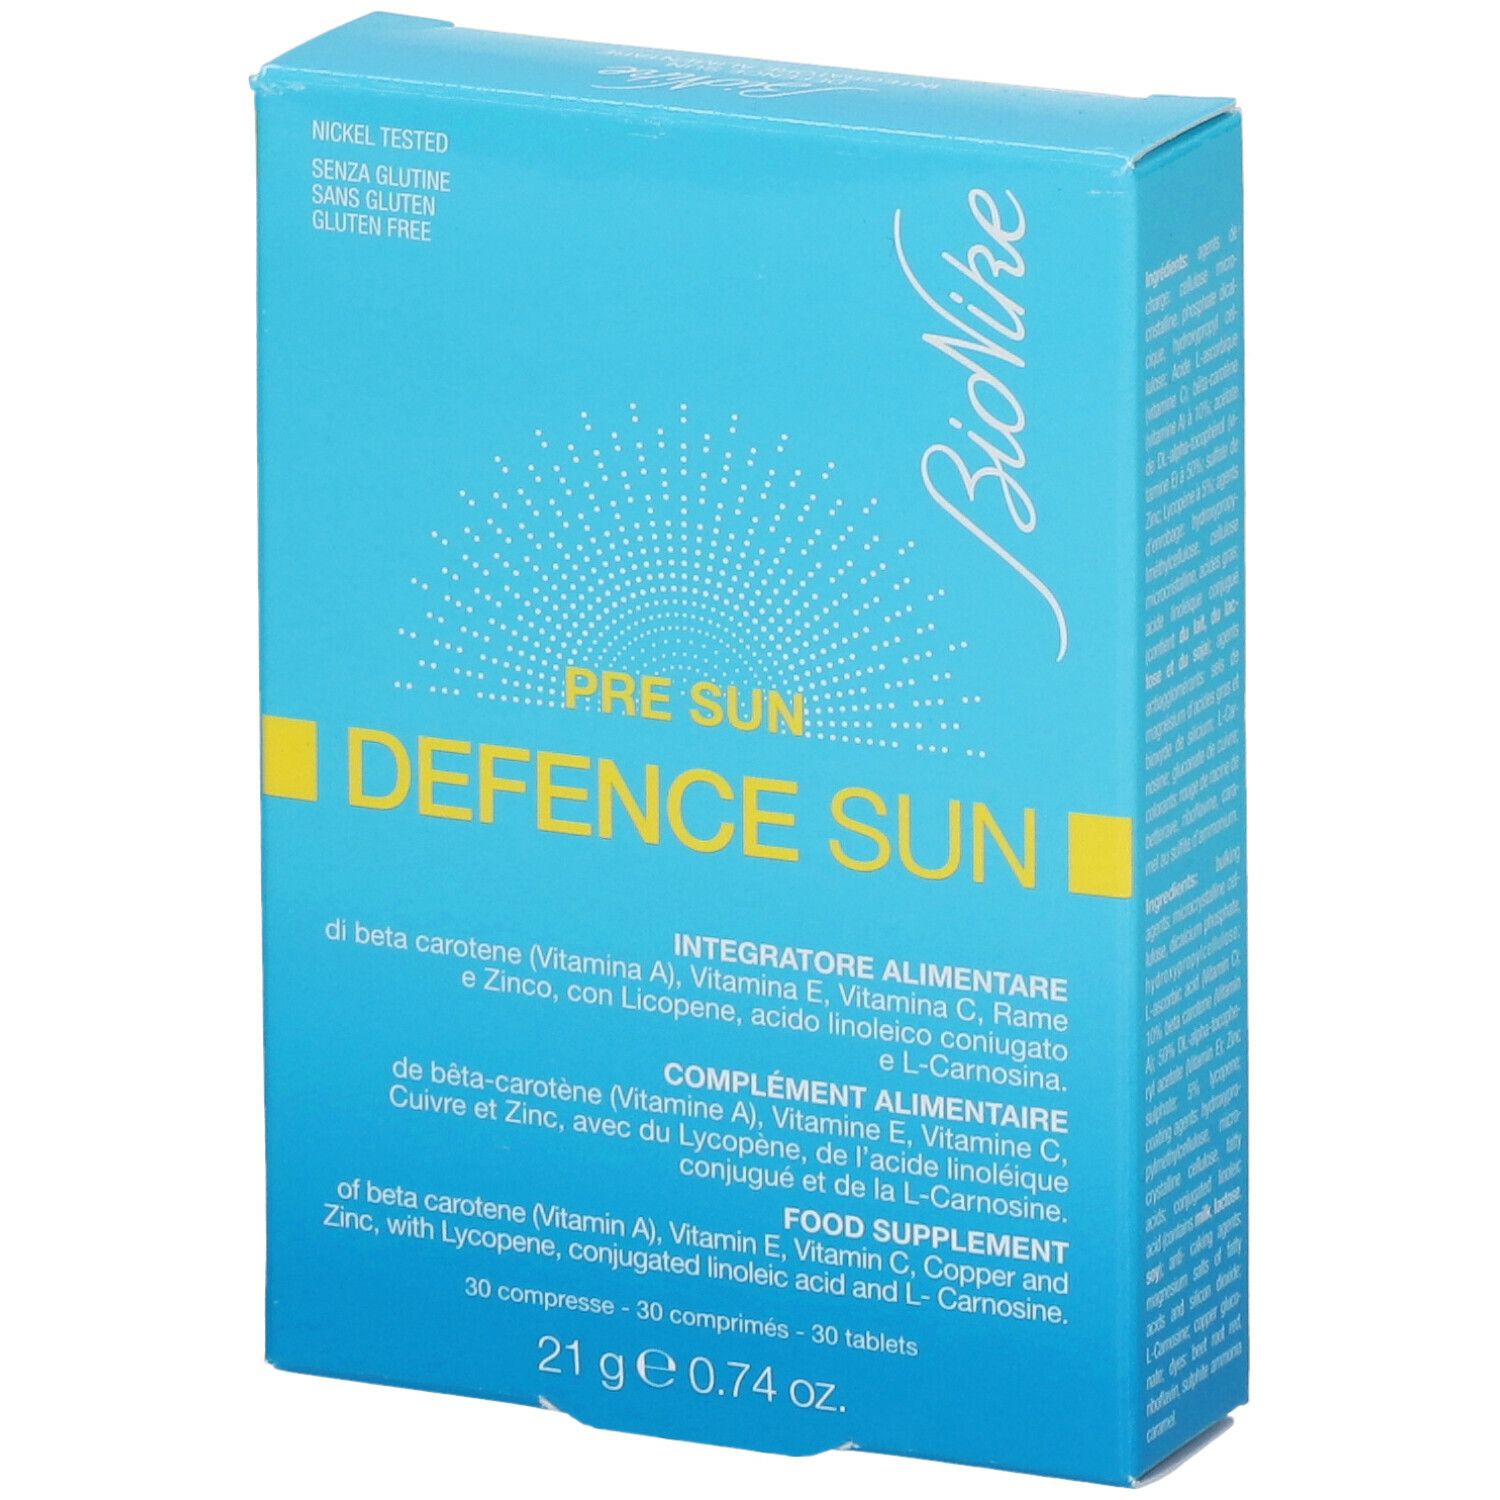 BioNike Pre Sun Defence Sun